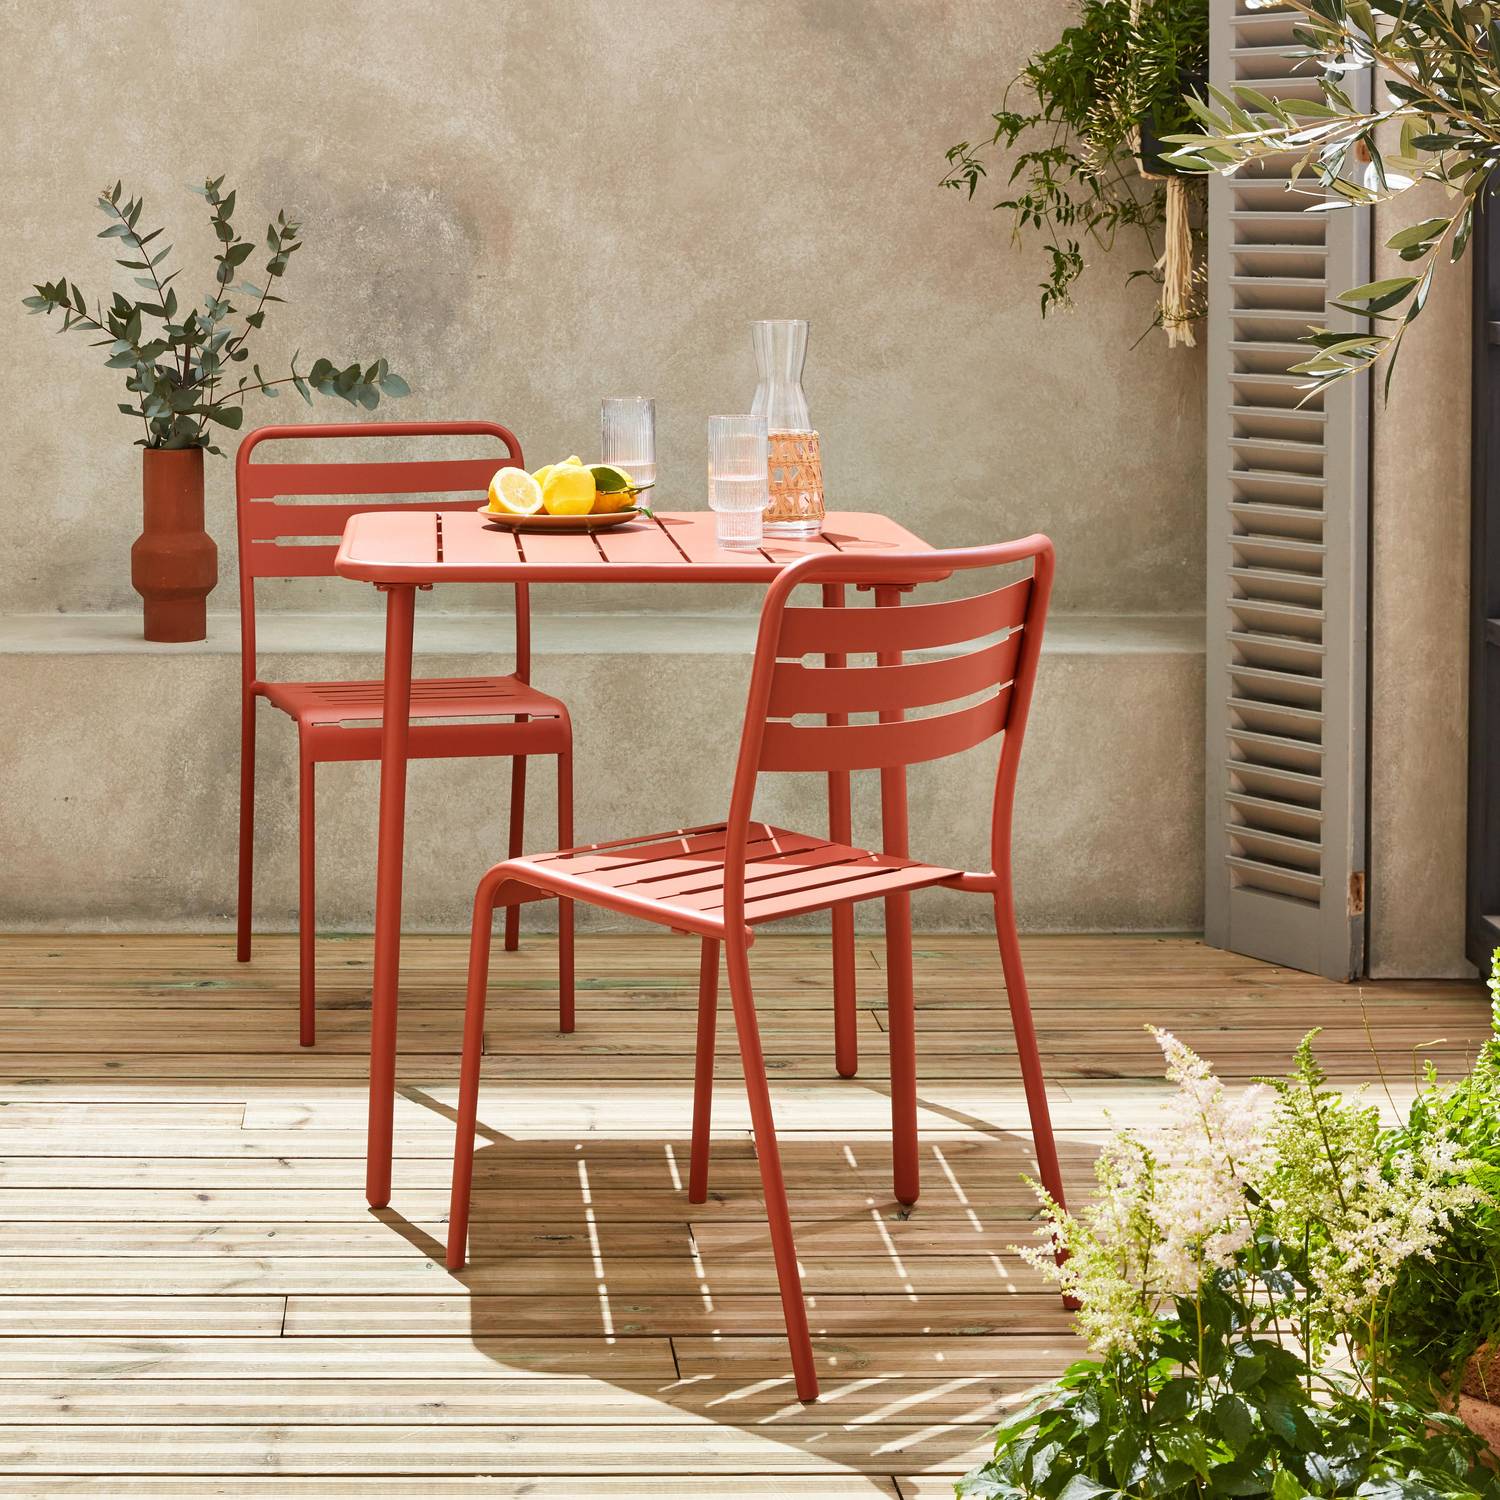 Metall-Gartentisch mit 2 Stühlen, 2 Personen, Amelia Terrakotta 70 x 70 cm Photo2